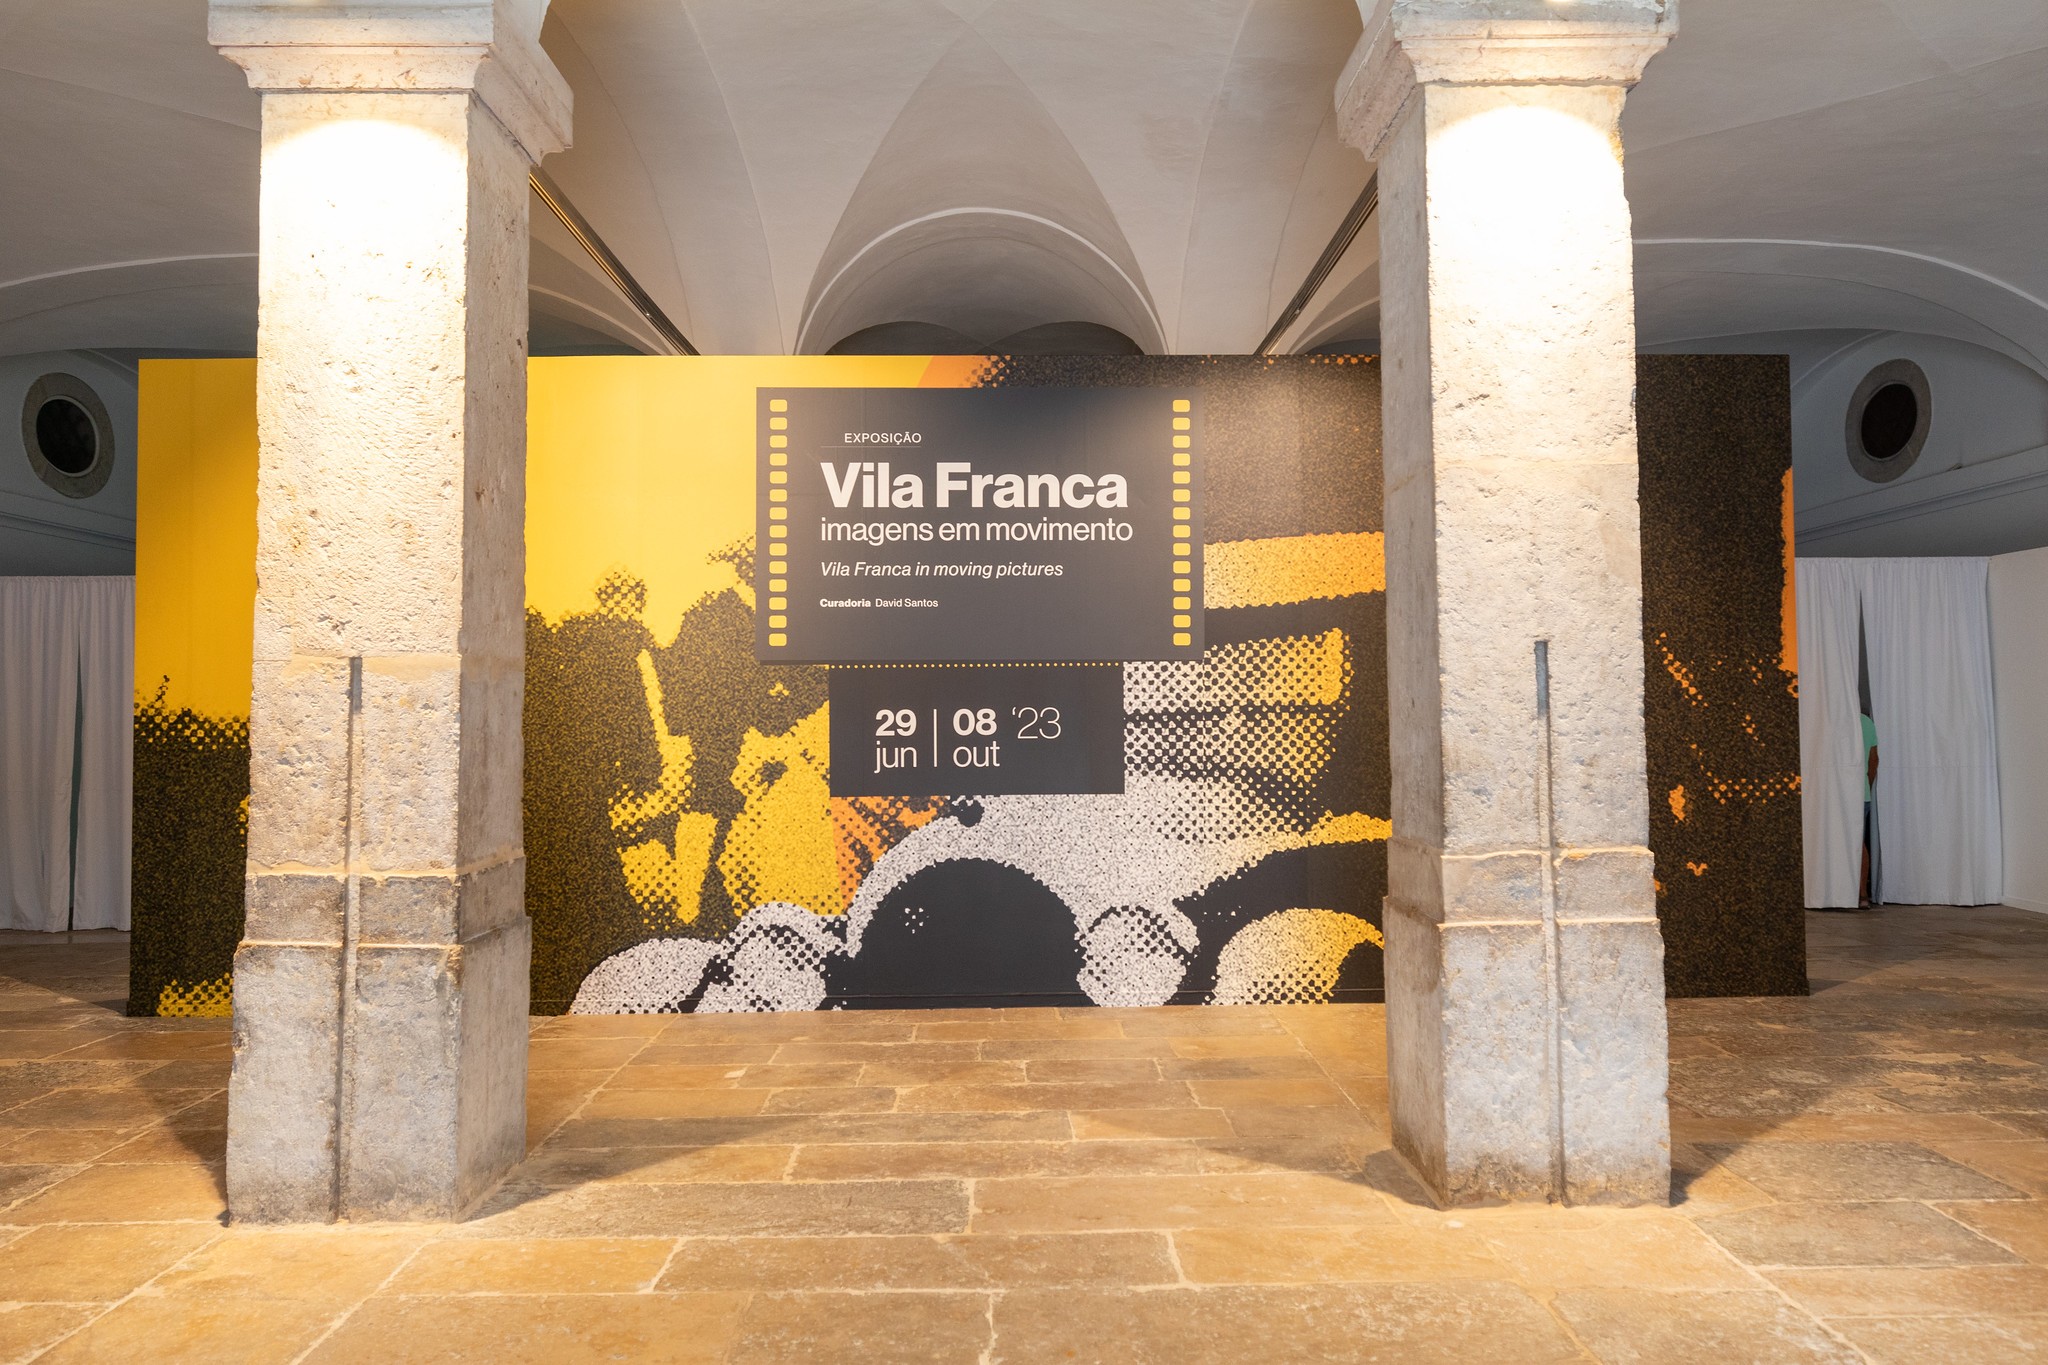 Vila Franca - Imagens em Movimento / Vila Franca in Moving Pictures